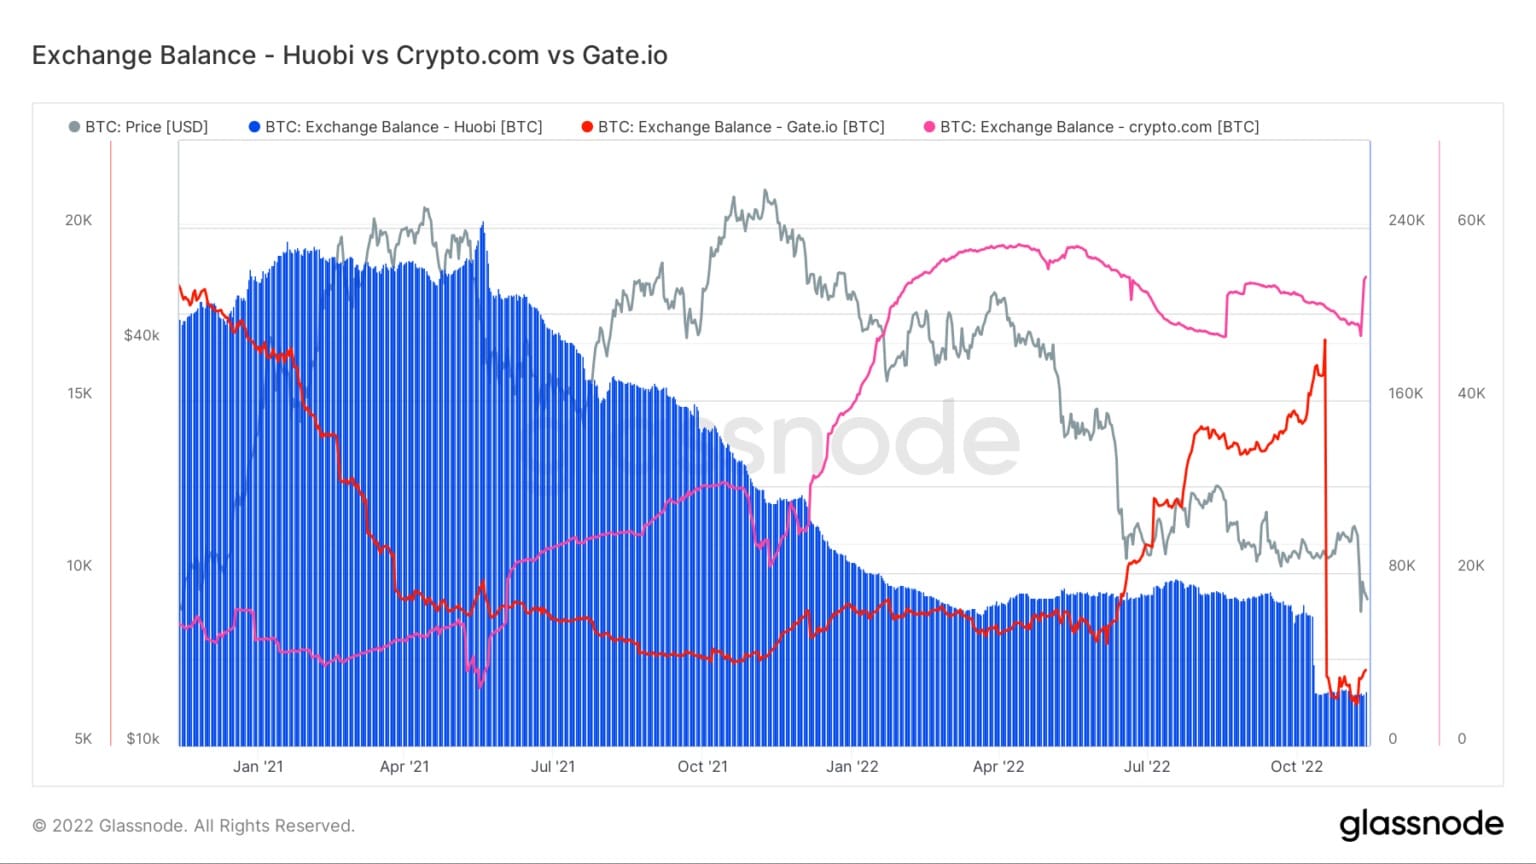 Graf zobrazující zůstatky bitcoinů na Huobi, Crypto.com a Gate.io od ledna 2021 do listopadu 2022 (zdroj: Glassnode)